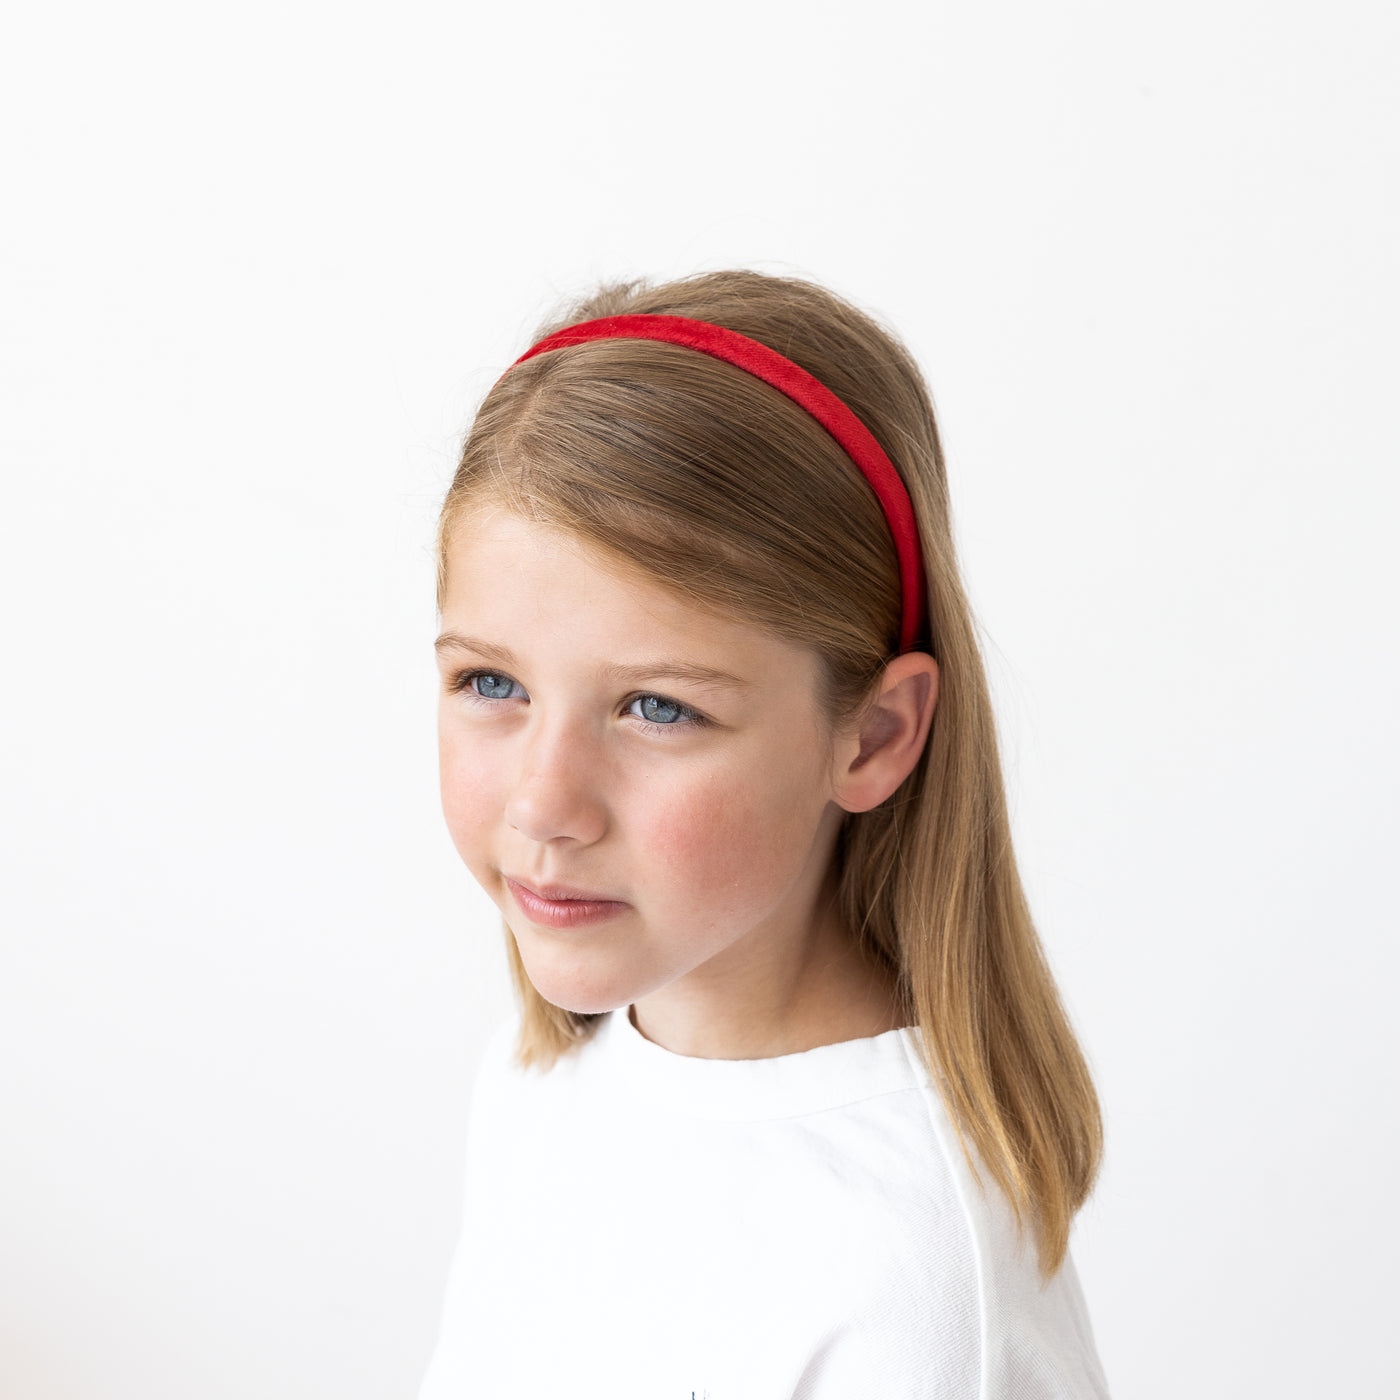 Little girl modelling a bright red velvet plain Alice band